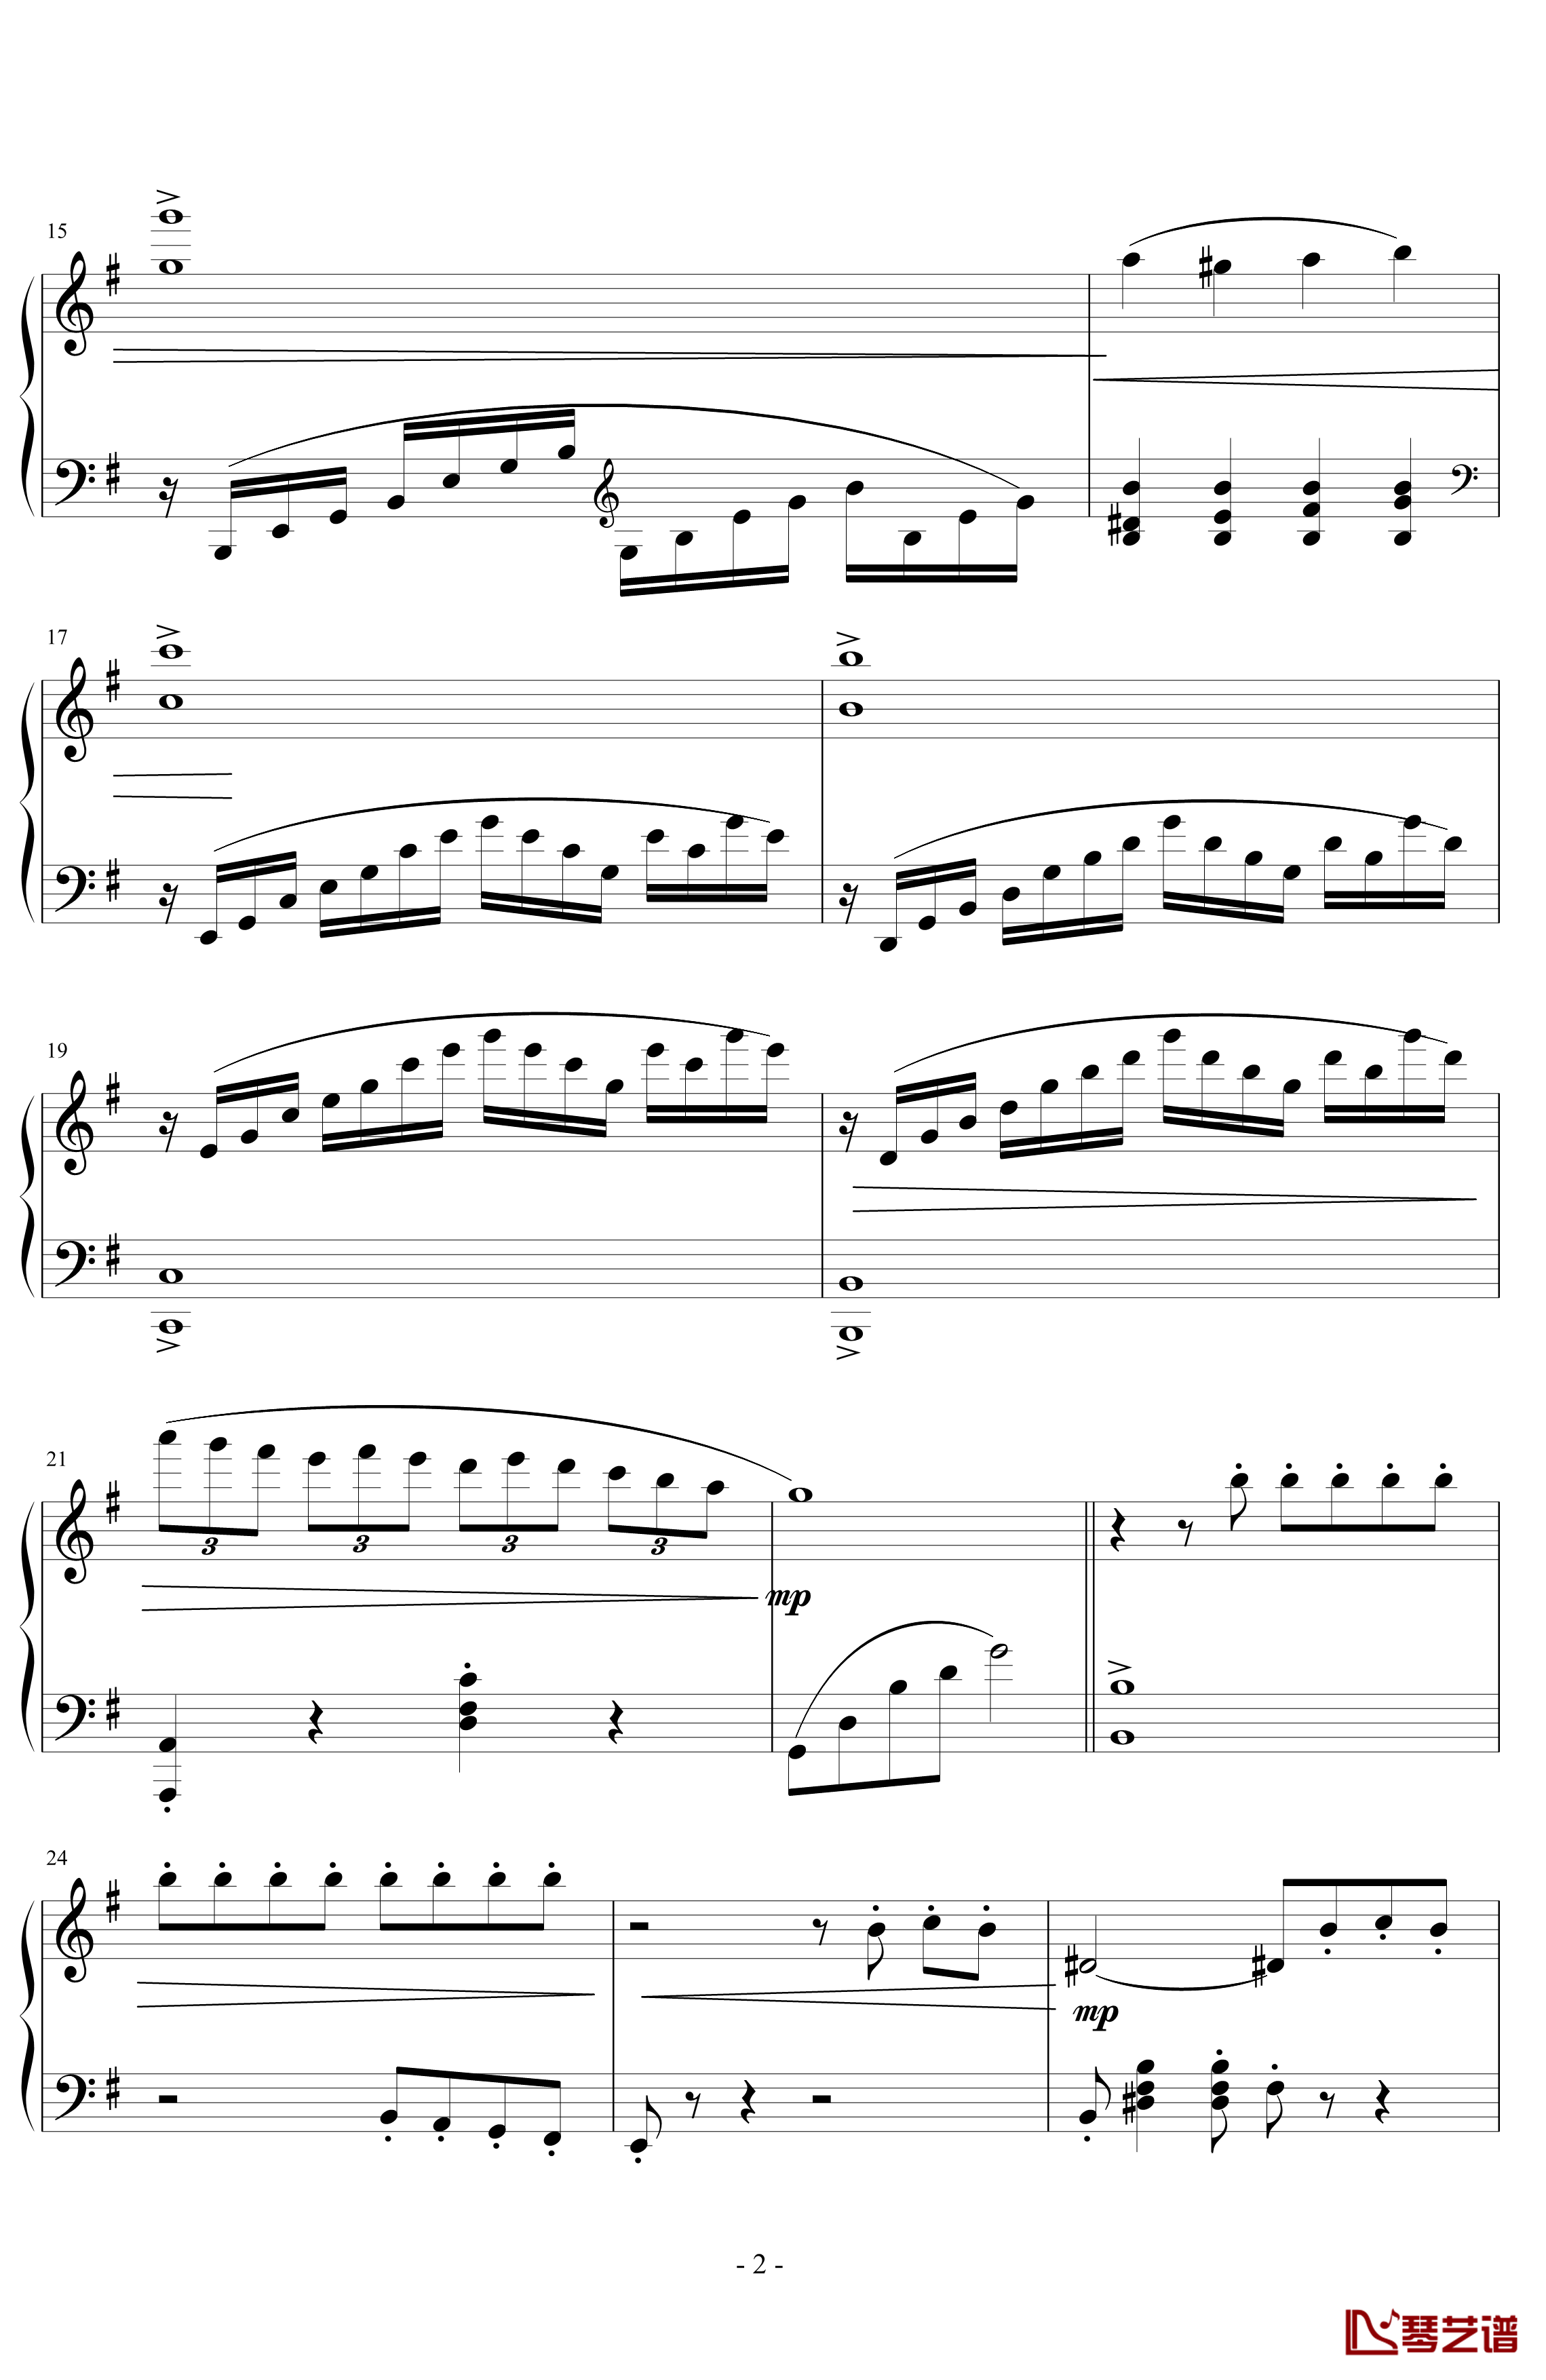 e小调小奏鸣曲钢琴谱 第一乐章-天籁传声2